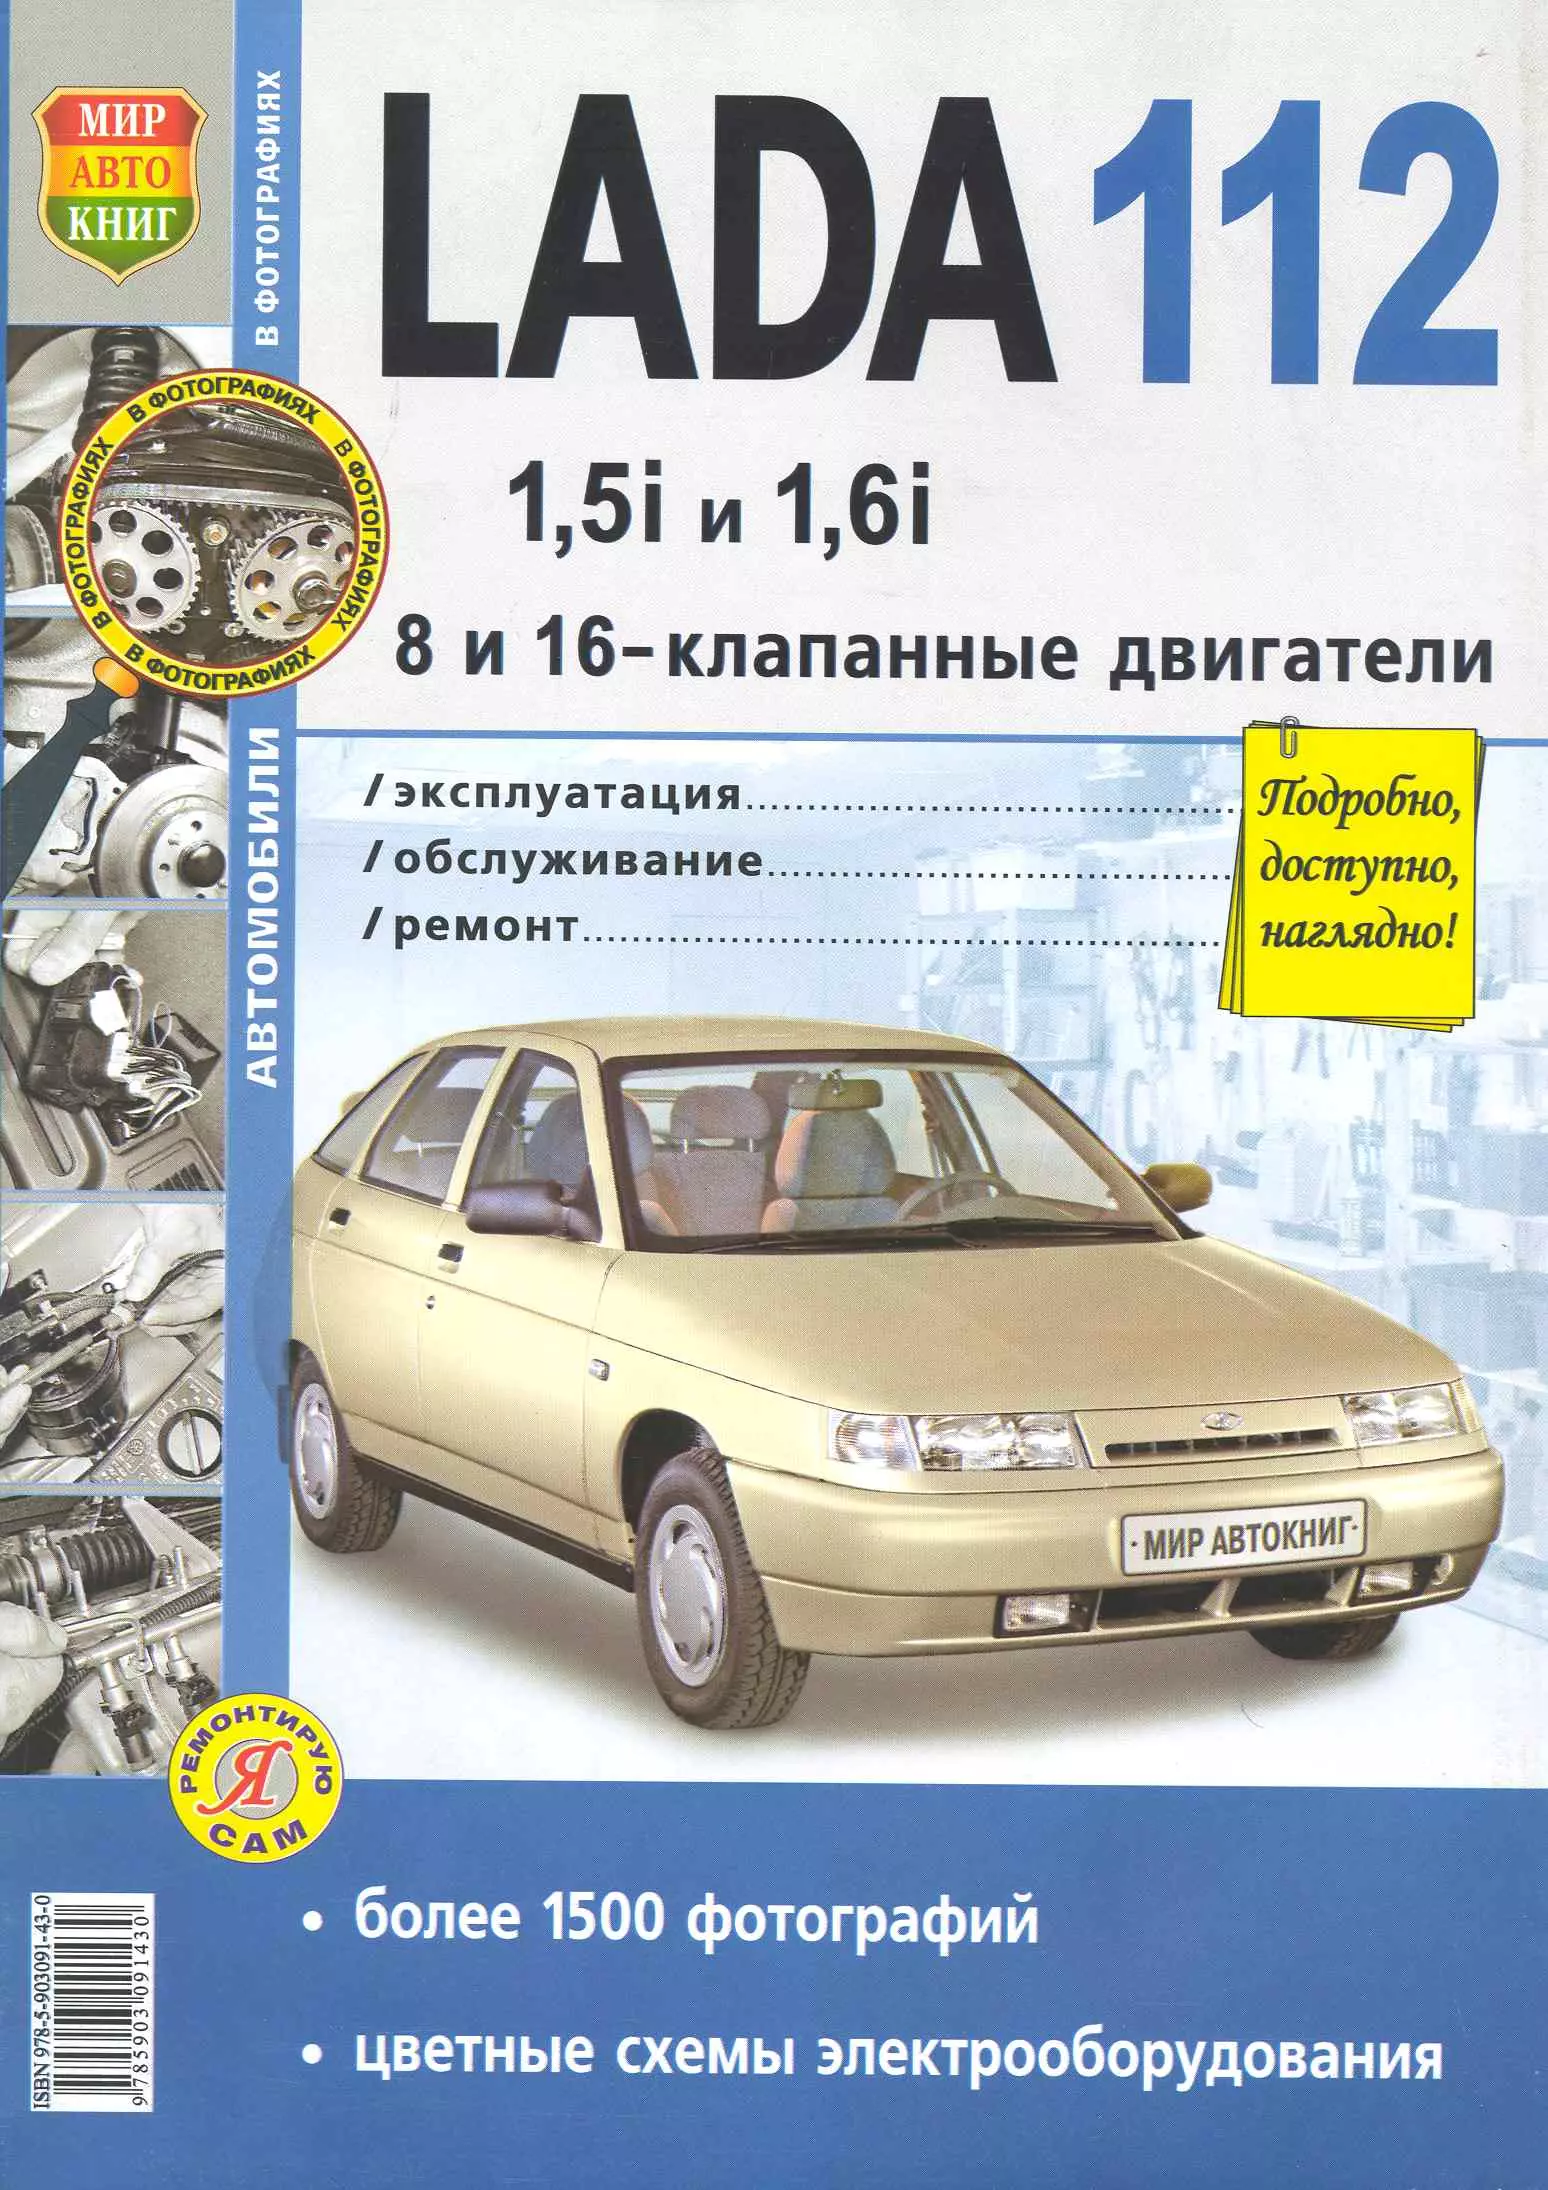 Гринев Константин - Автомобили Lada 112 с 8 и 16-клапанными двигателями 1,5i и 1,6i. Эксплуатация, обслуживание, ремонт